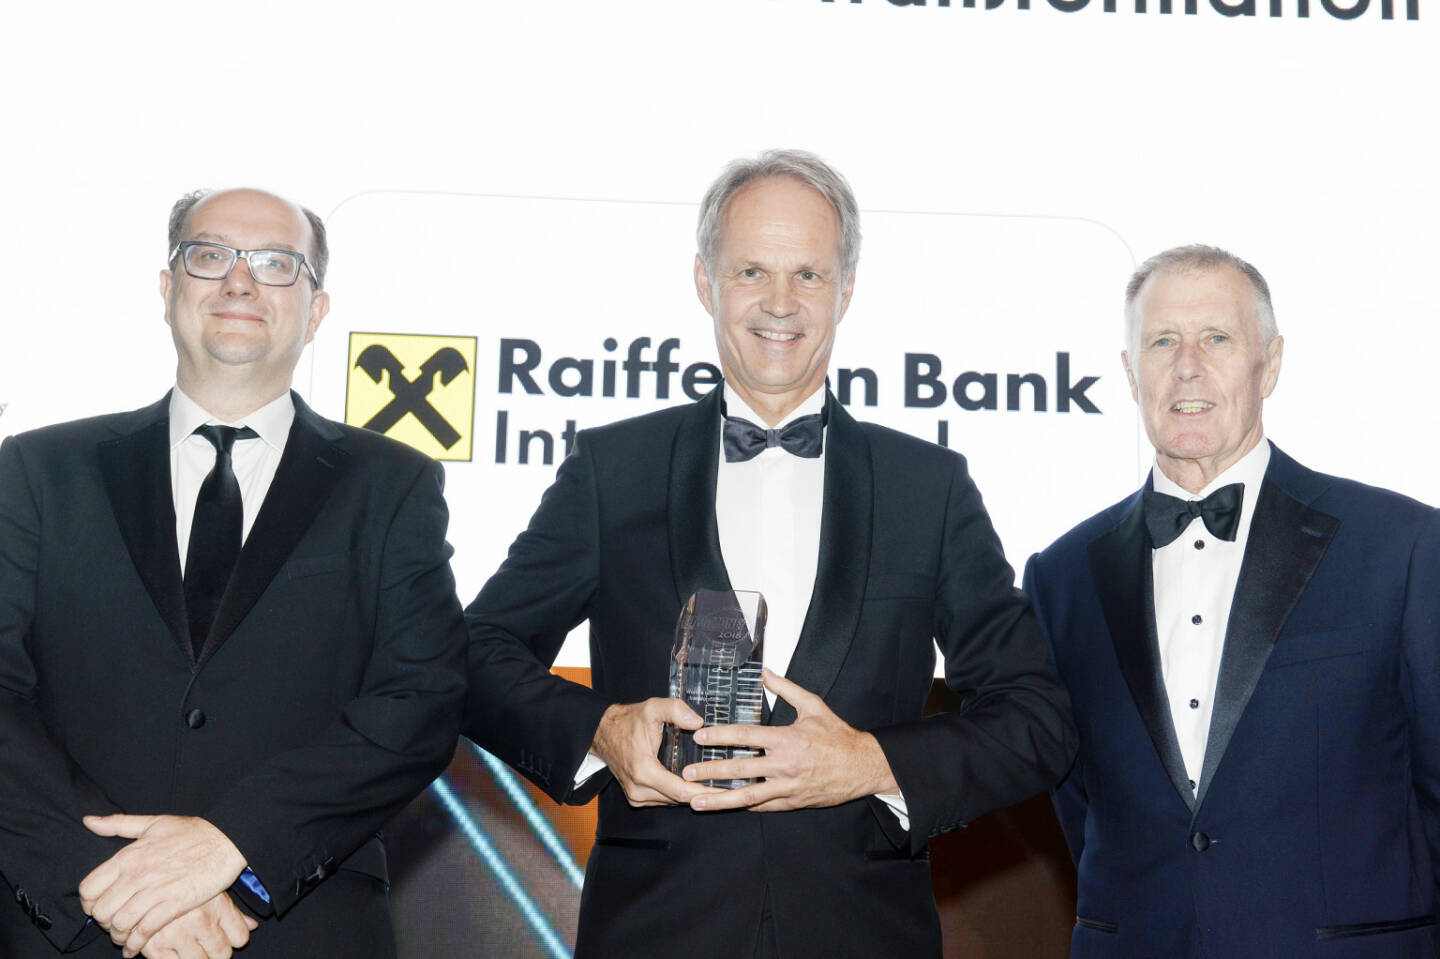 In einer festlichen Galazeremonie wurden gestern Abend in London die „Euromoney Awards for Excellence 2018“ verliehen. Die Raiffeisen Bank International (RBI) und ihre Tochterbanken erhielten insgesamt neun Auszeichnungen. Die RBI gewann den Preis für die „World's Best Bank Transformation“ und konsequenterweise auch für die „Best Bank Transformation“ in Zentral- und Osteuropa. v.l.n.r.: Clive Horwood (Herausgeber Euromoney), Martin Grüll (CFO, RBI), Sir Geoff Hurst (englische Fußballlegende). Copyright: Euromoney